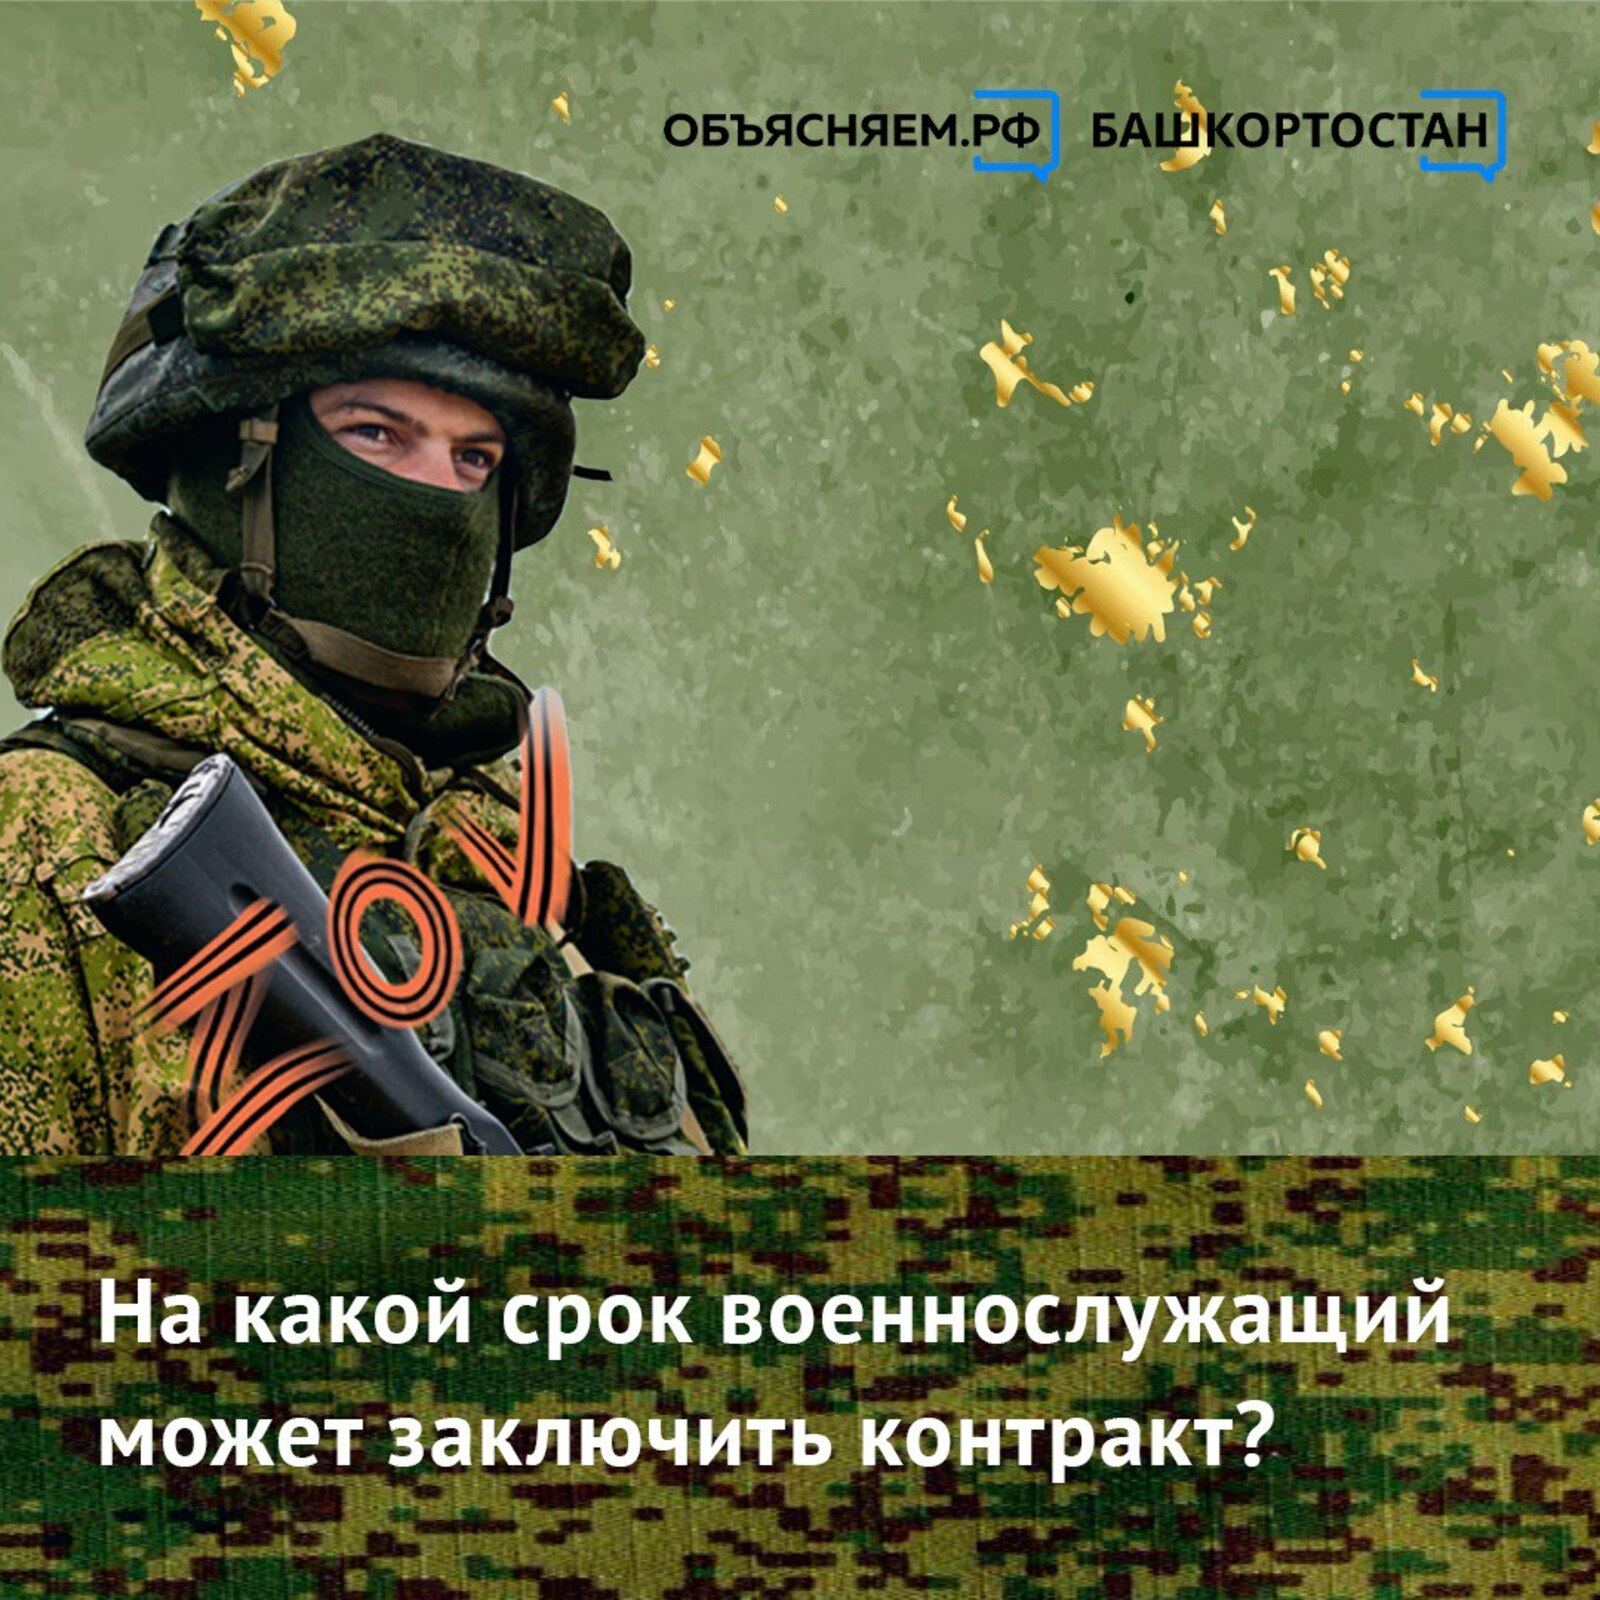 На какой срок в Башкортостане можно заключить контракт на прохождение военной службы?